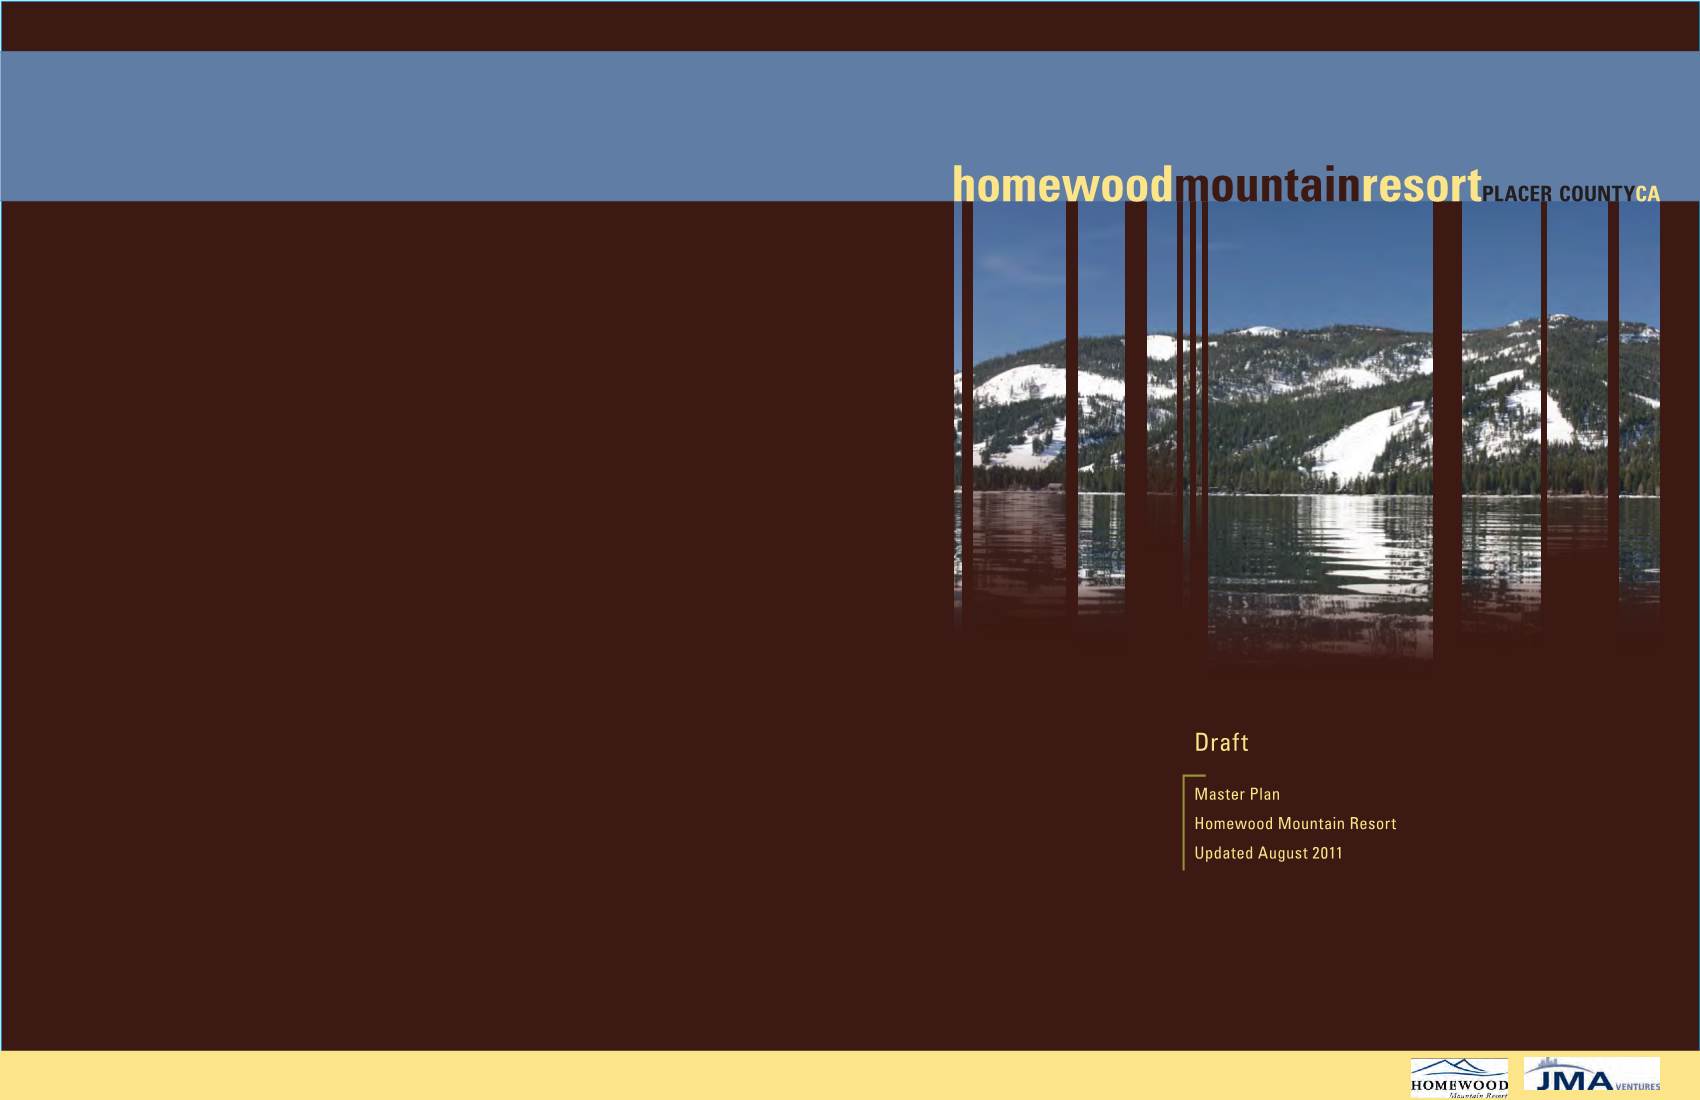 Master Plan for Homewood Mountain Resort